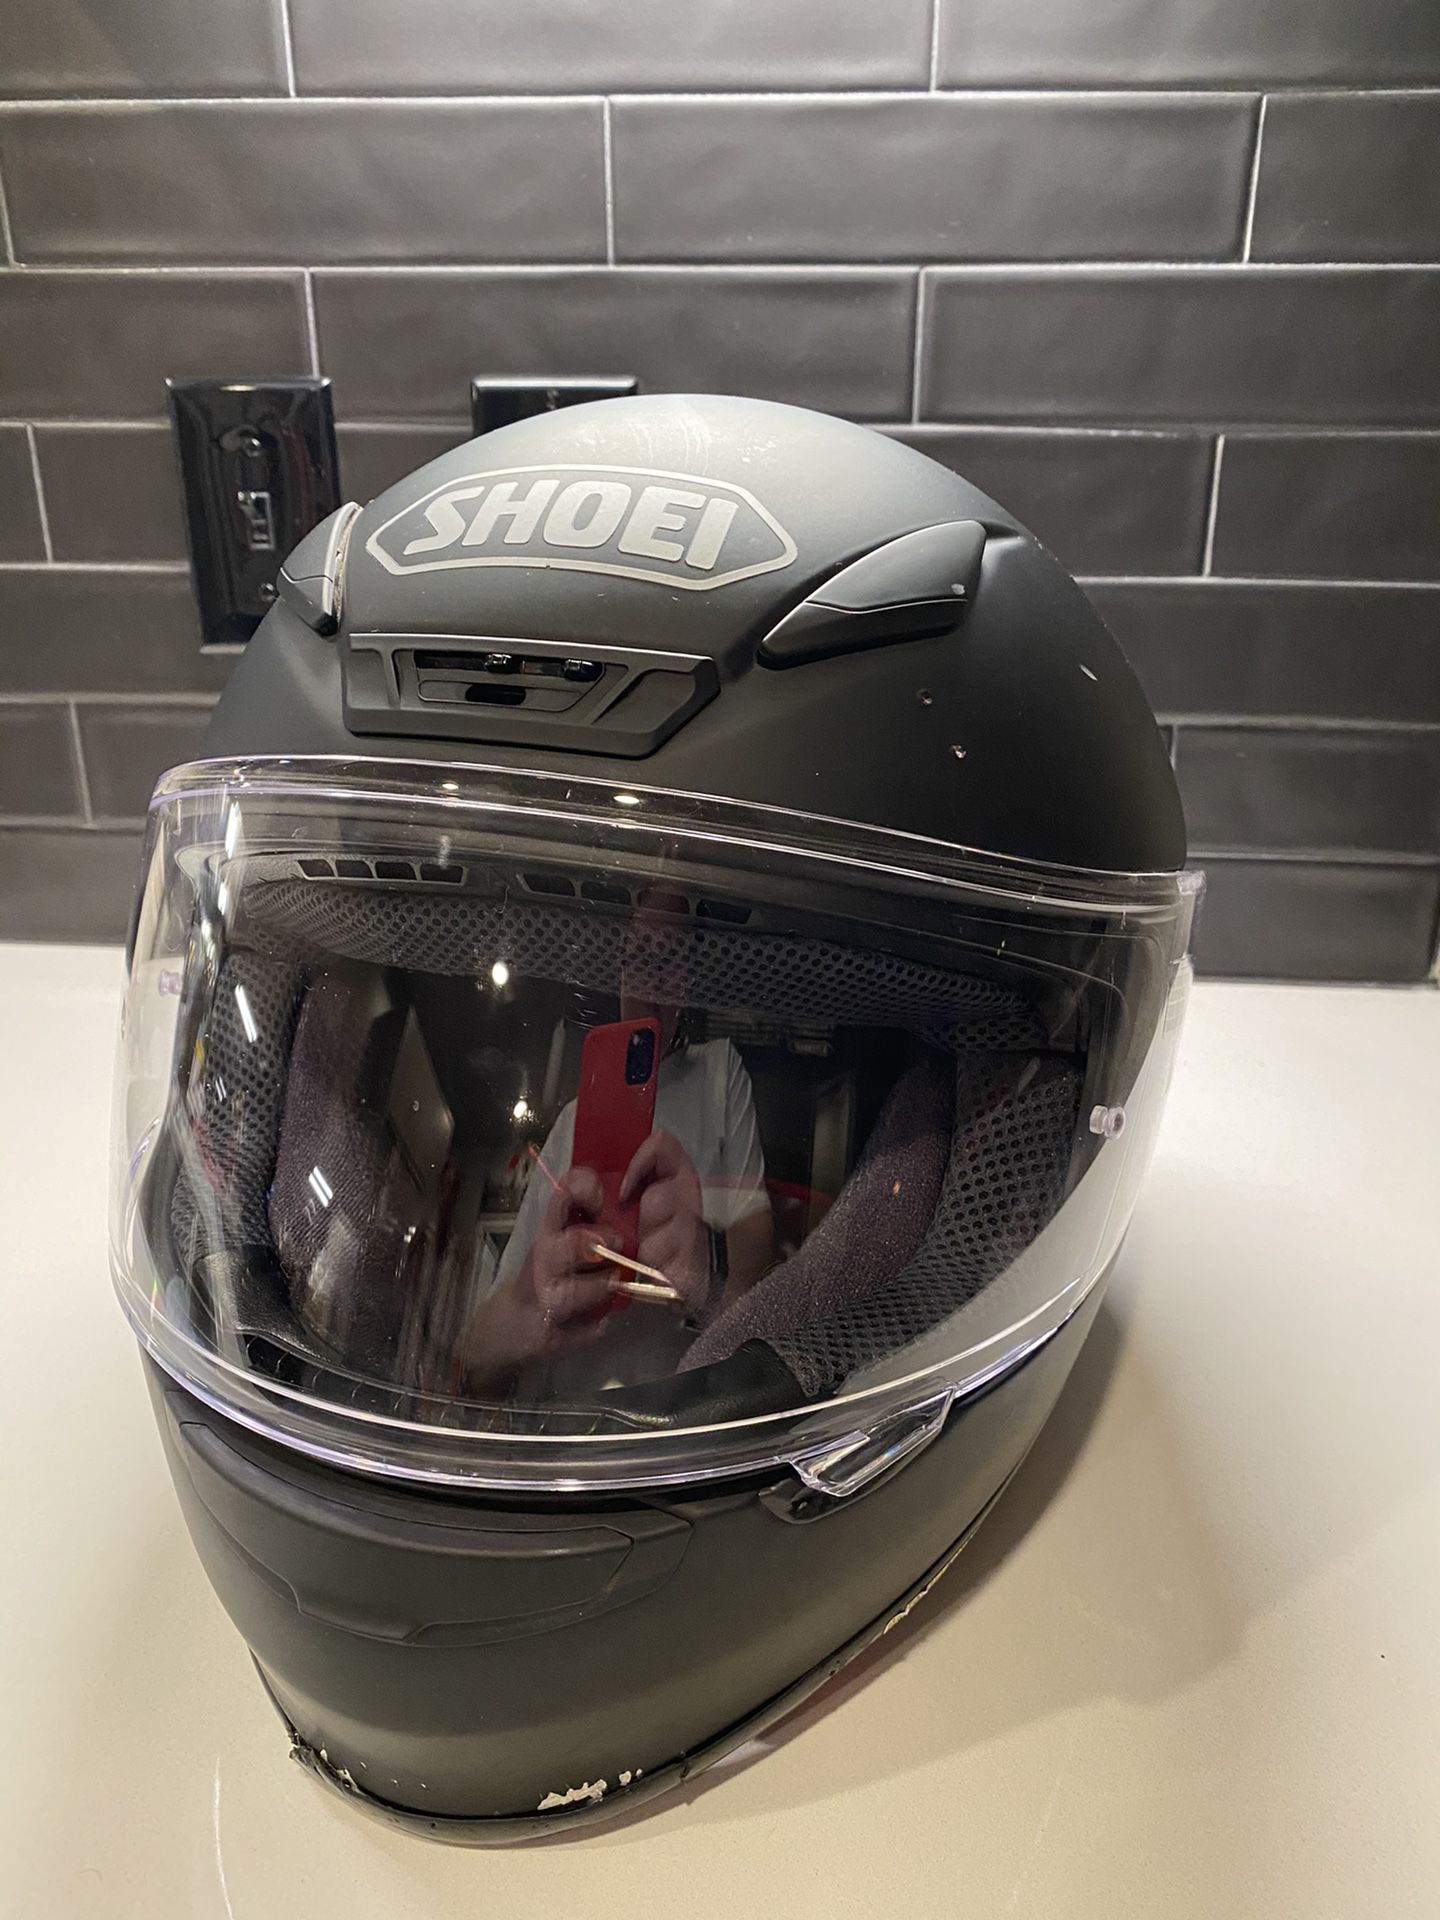 Shoei RF 1200 motorcycle helmet